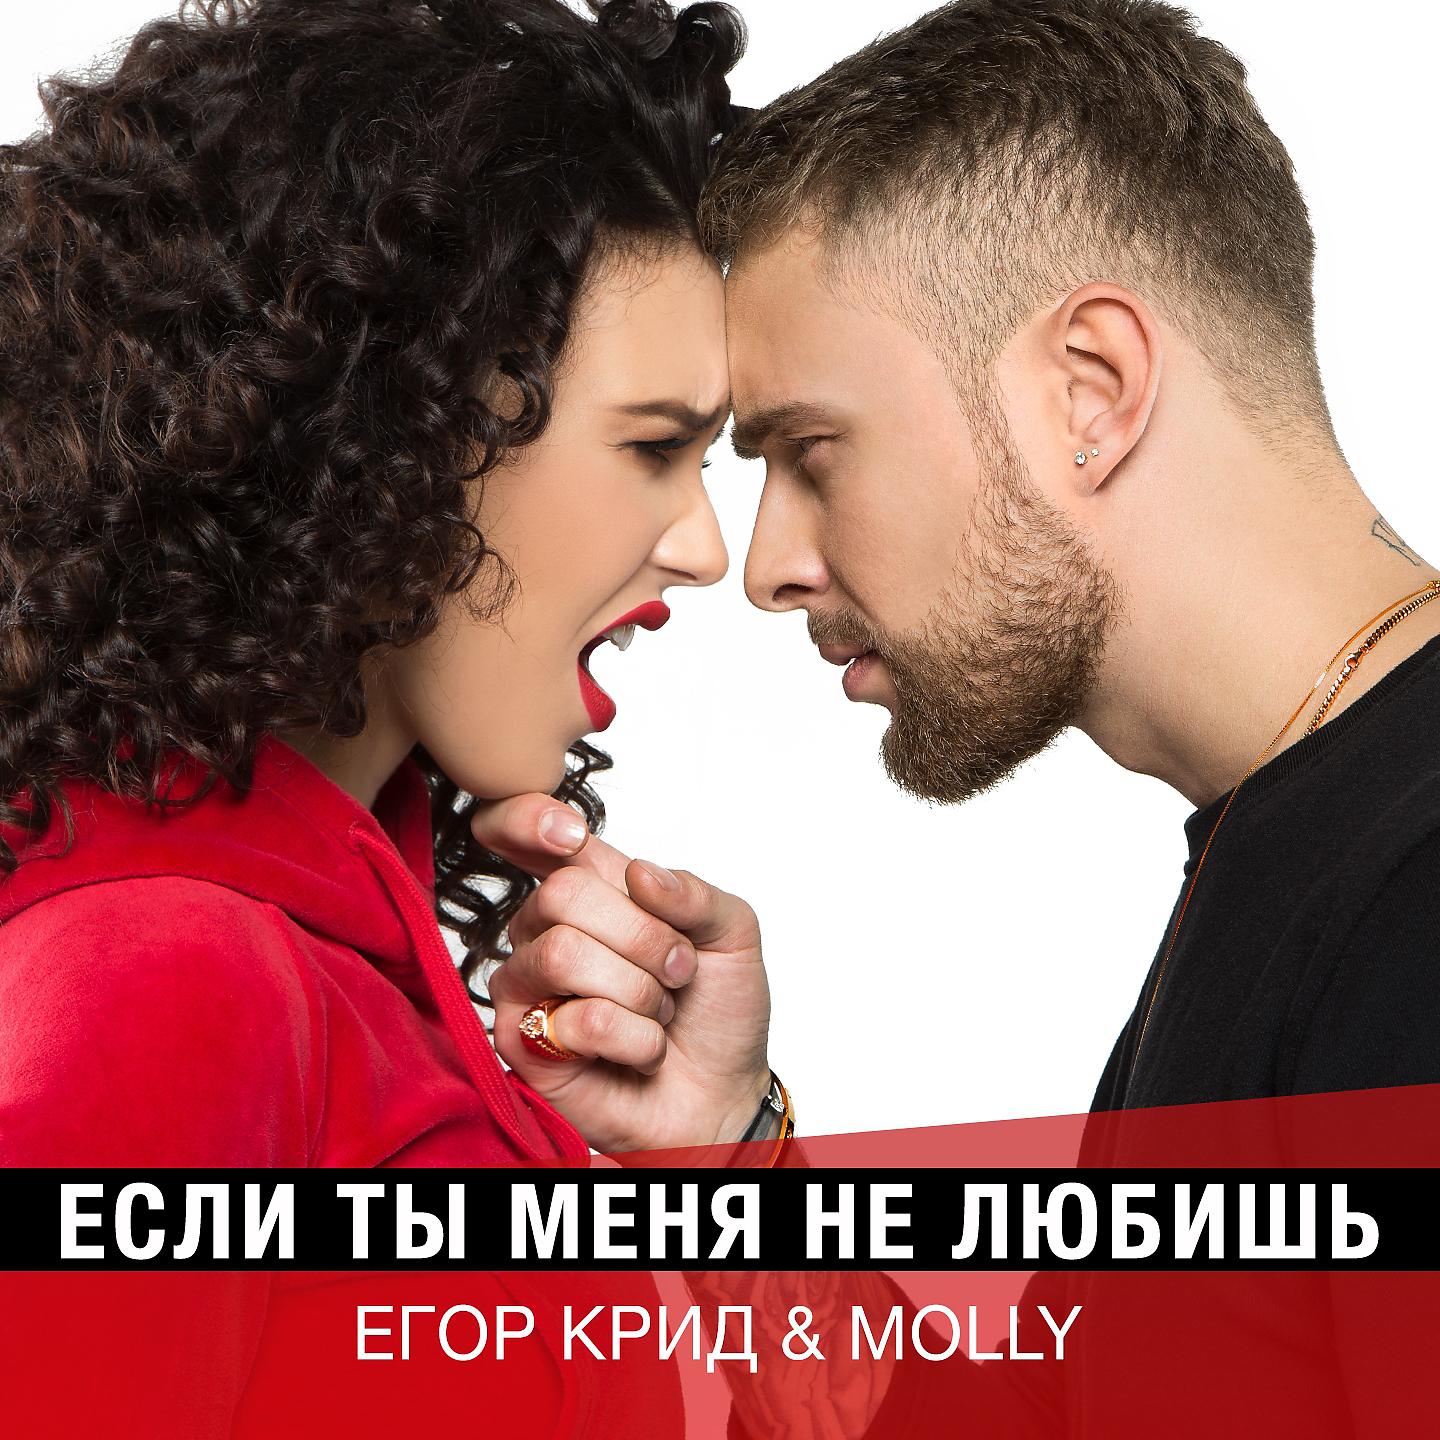 Егор Крид, MOLLY - Если ты меня не любишь